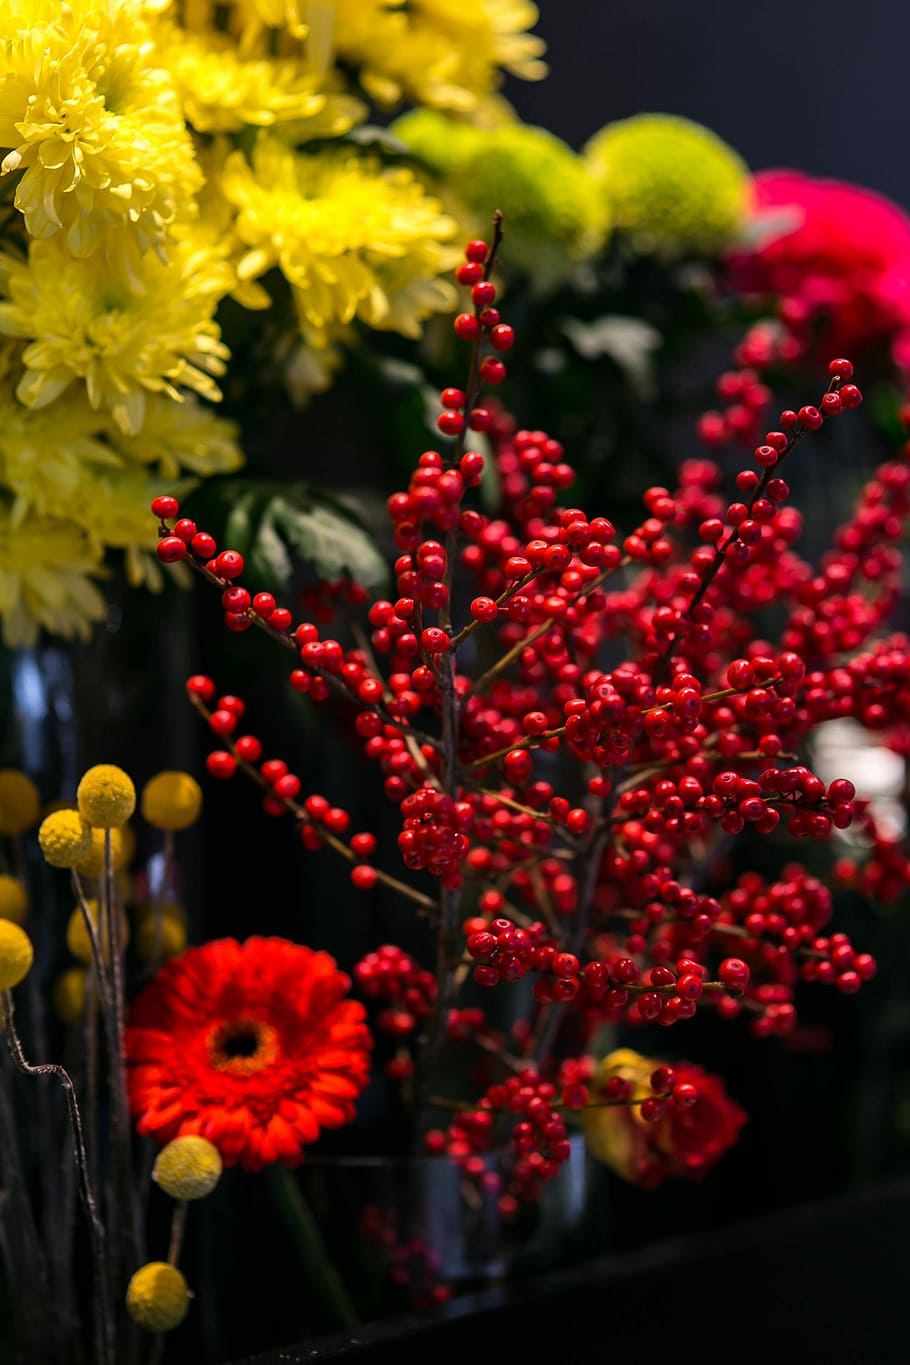 merah, rowan, pengaturan warna-warni, bunga, warna-warni, pengaturan, flora, kuning, karangan bunga, cantik